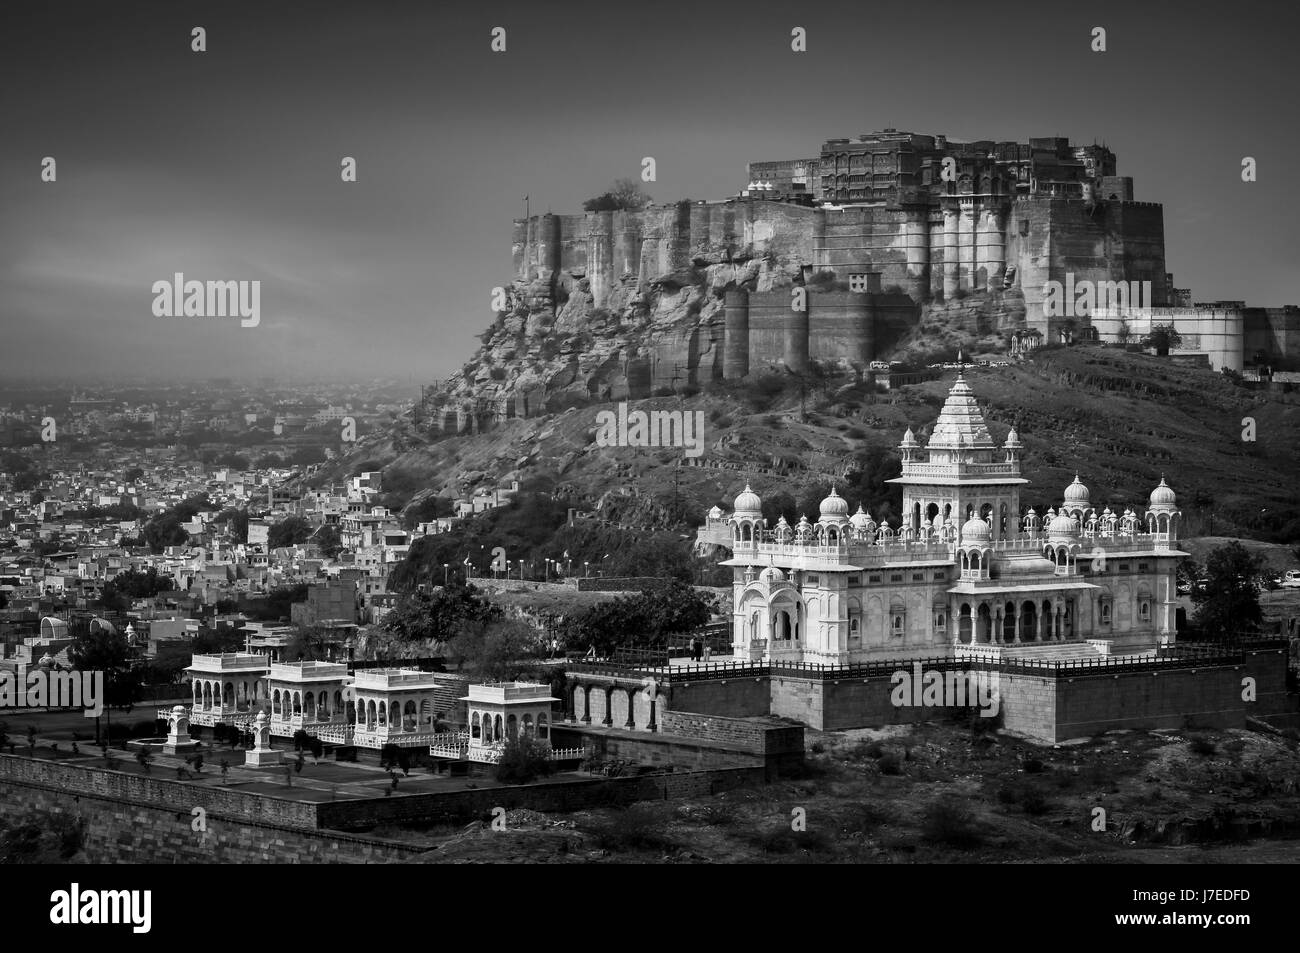 Dramatische schwarz / weiß Foto des Mehrangarh Fort mit Blick auf die Rajasthani Stadt Jodhpur in Indien. Eine der größten Festungen in Indien. Stockfoto